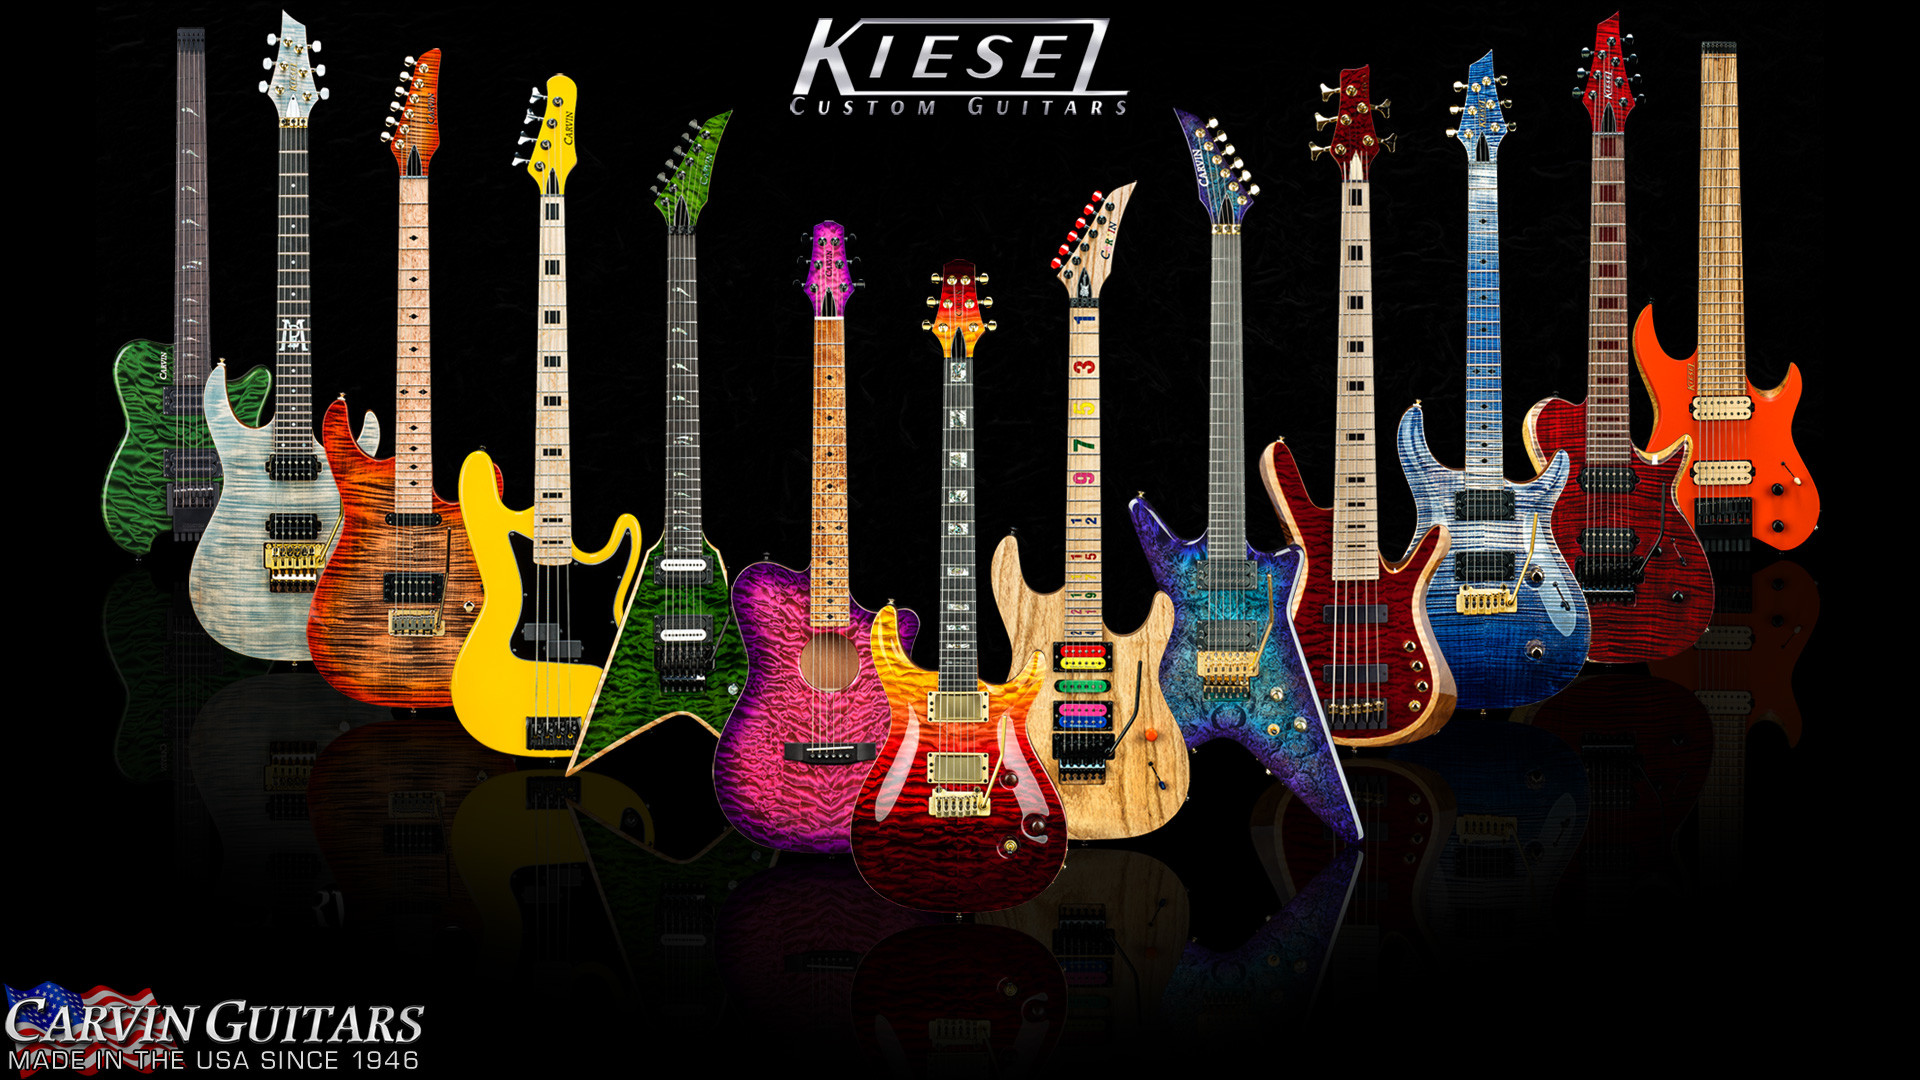 1920x1080 1600 X 1200 Â· 1440 X 900 Â· 1024 X 768. Kiesel Guitars JB5 Classic Jazz Bass  Wallpaper